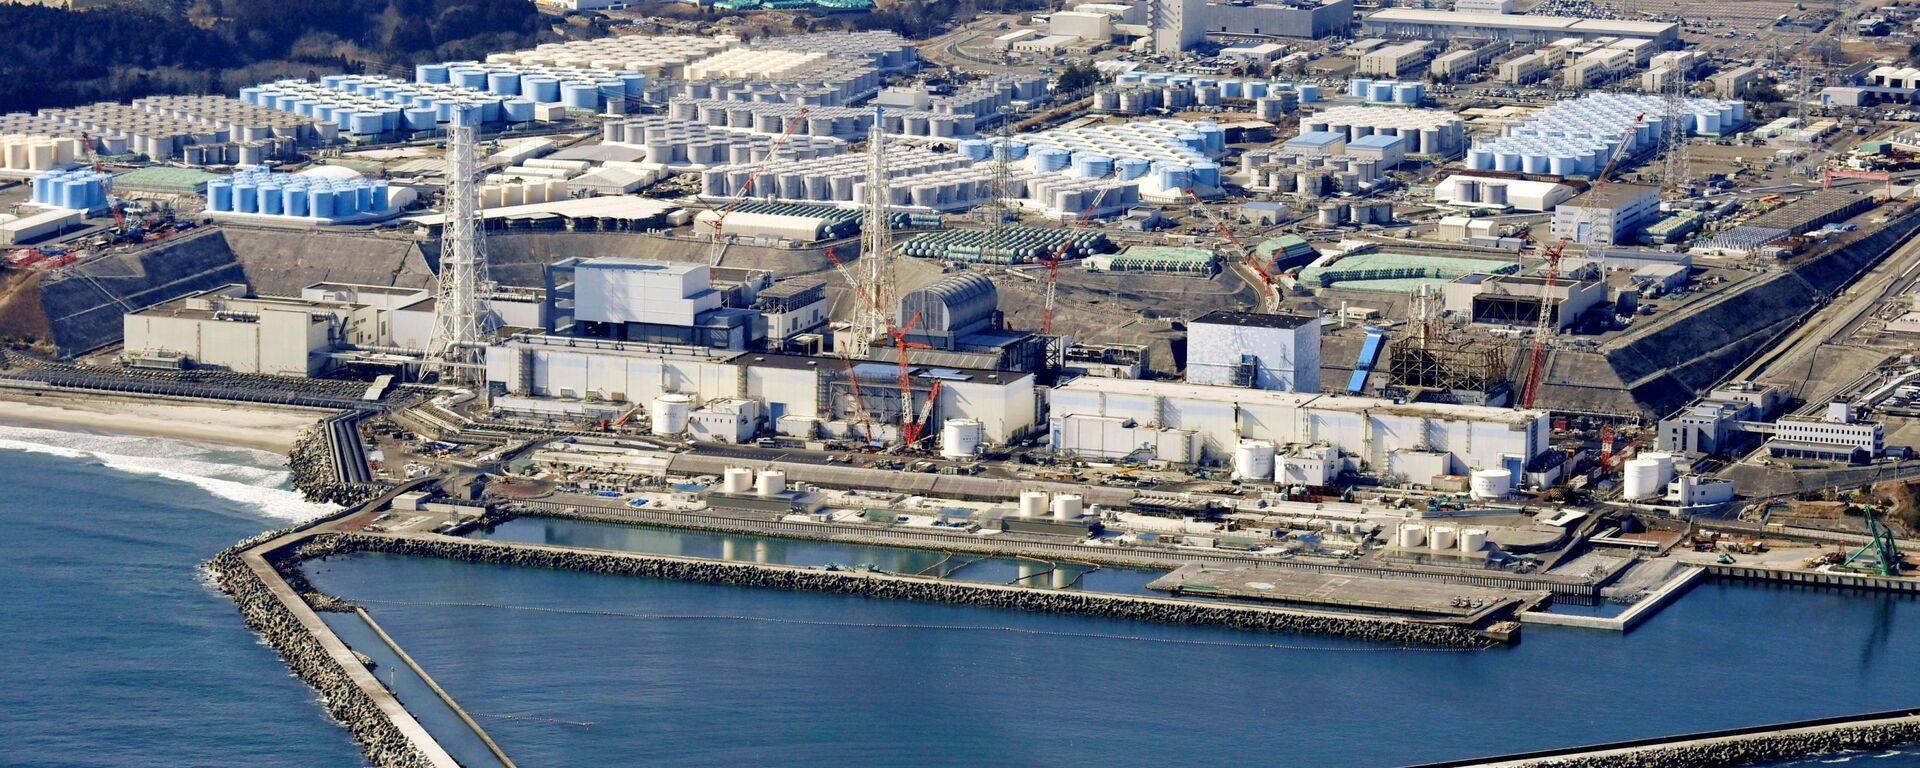 日本福岛核电站燃料碎片清除难